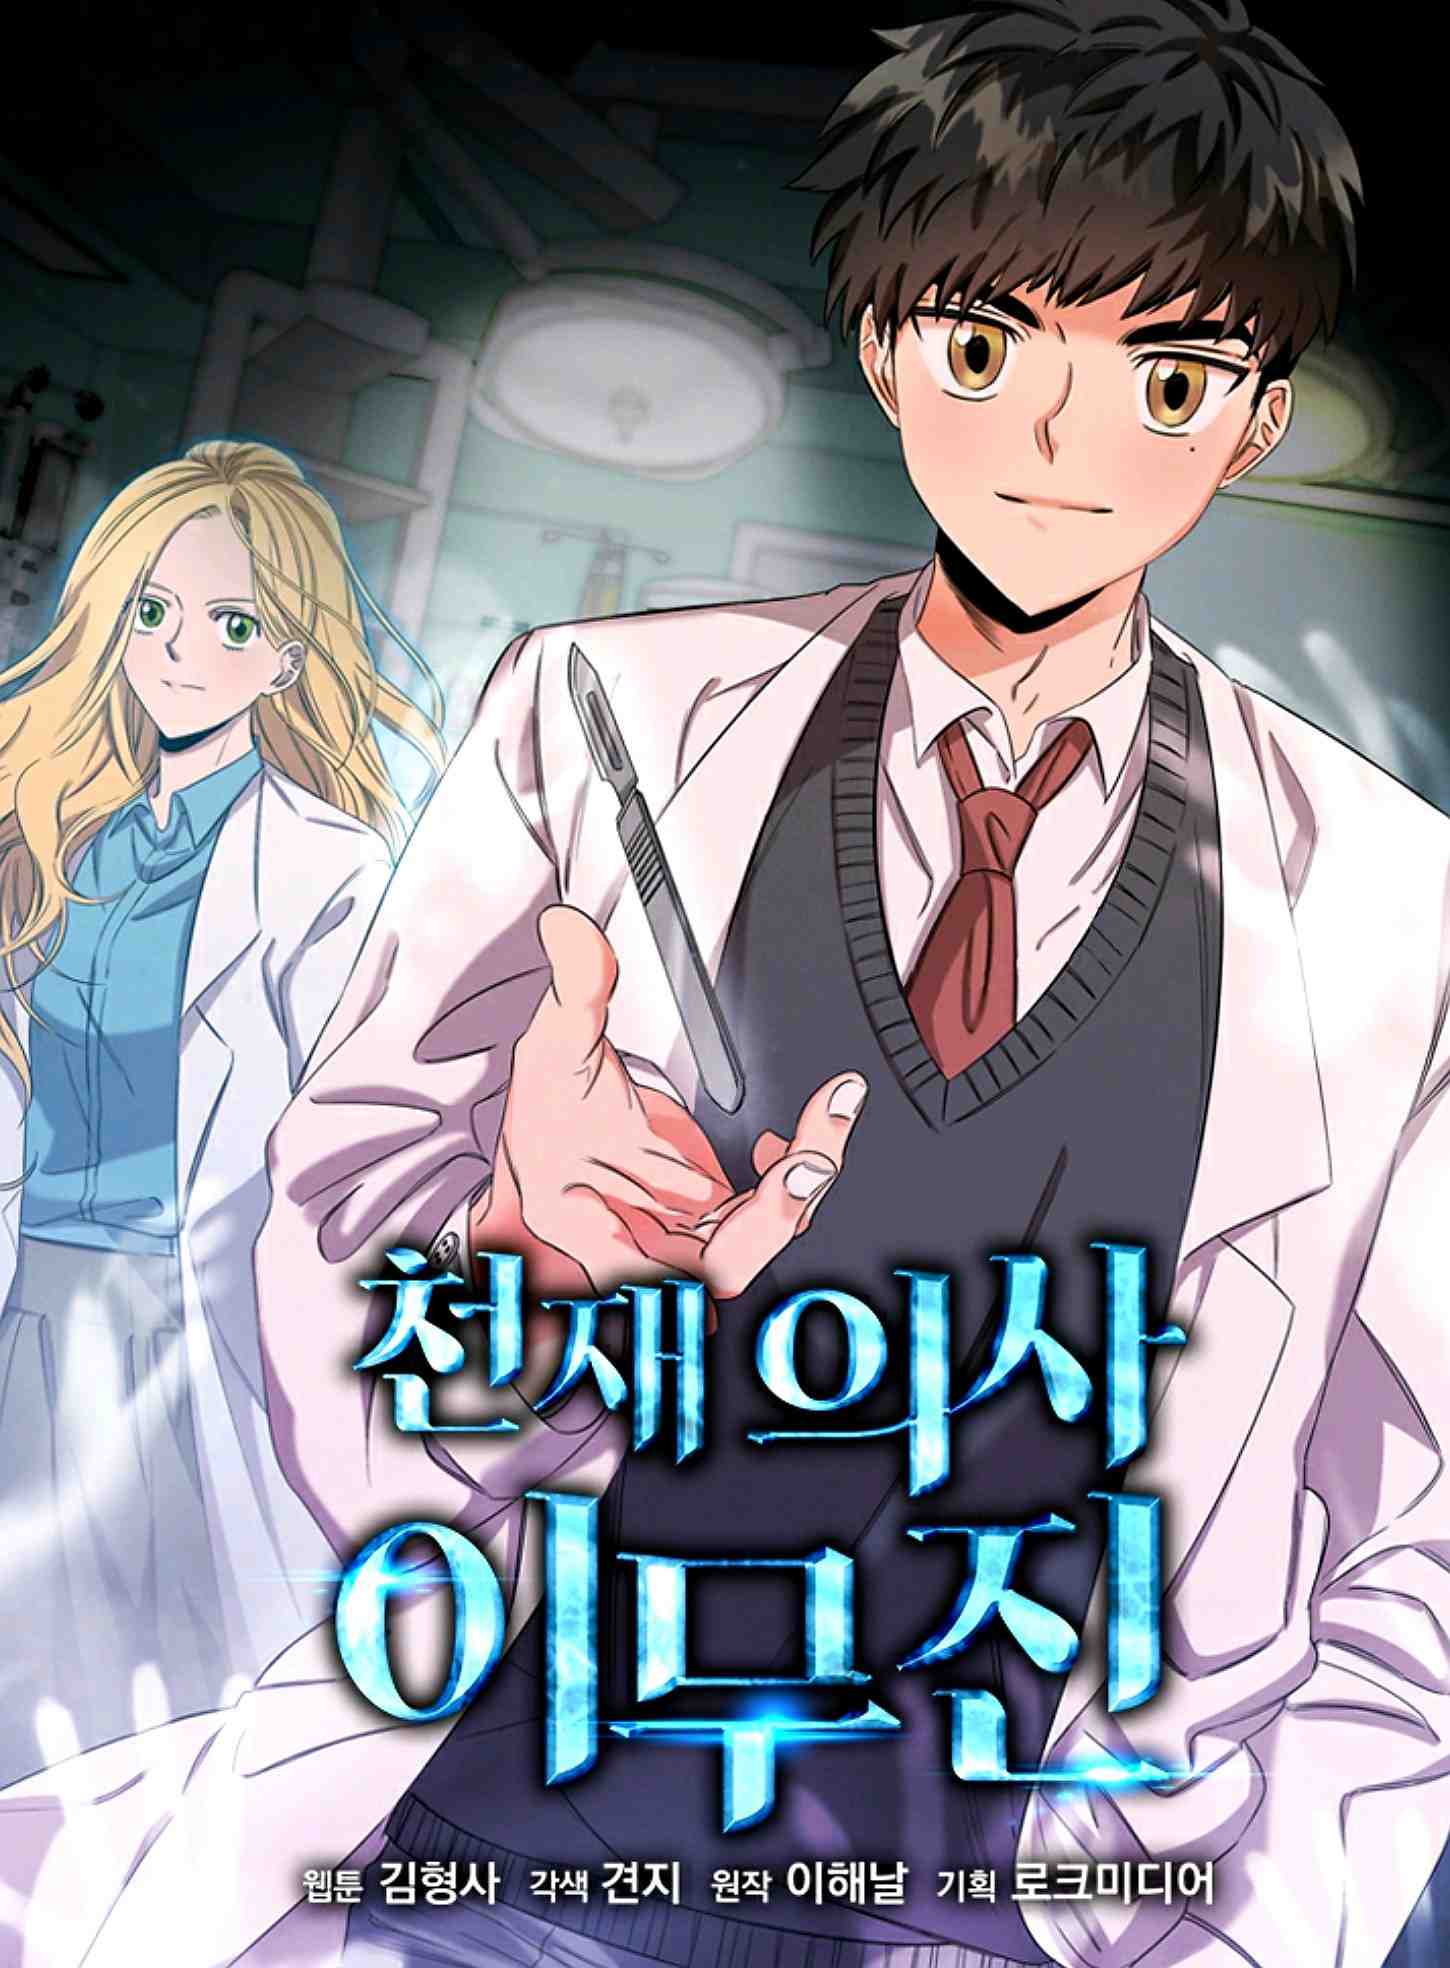 Read Genius Doctor Lee Moo-jin Manga Online for Free